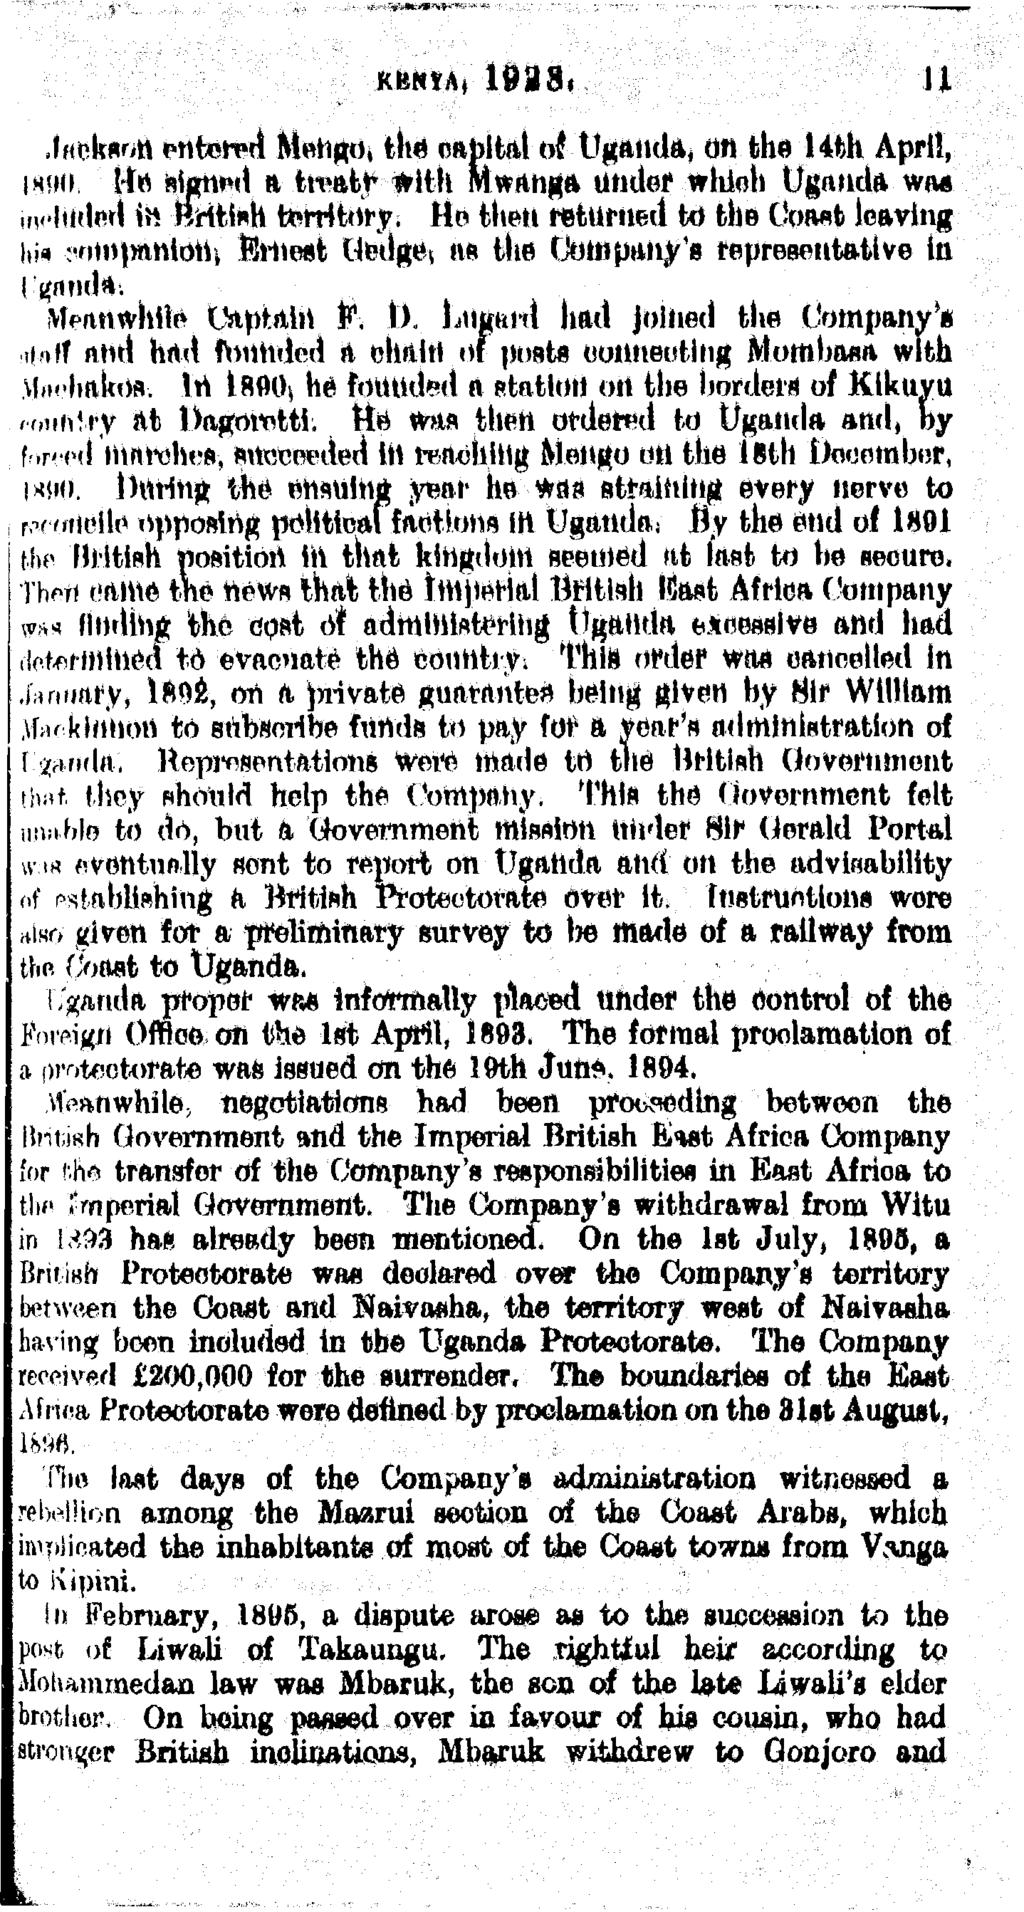 Rfc?oA< leas* Jaeksott entered Mehgo.. the eahltal of Uganda, cm the Hth April, 1890.